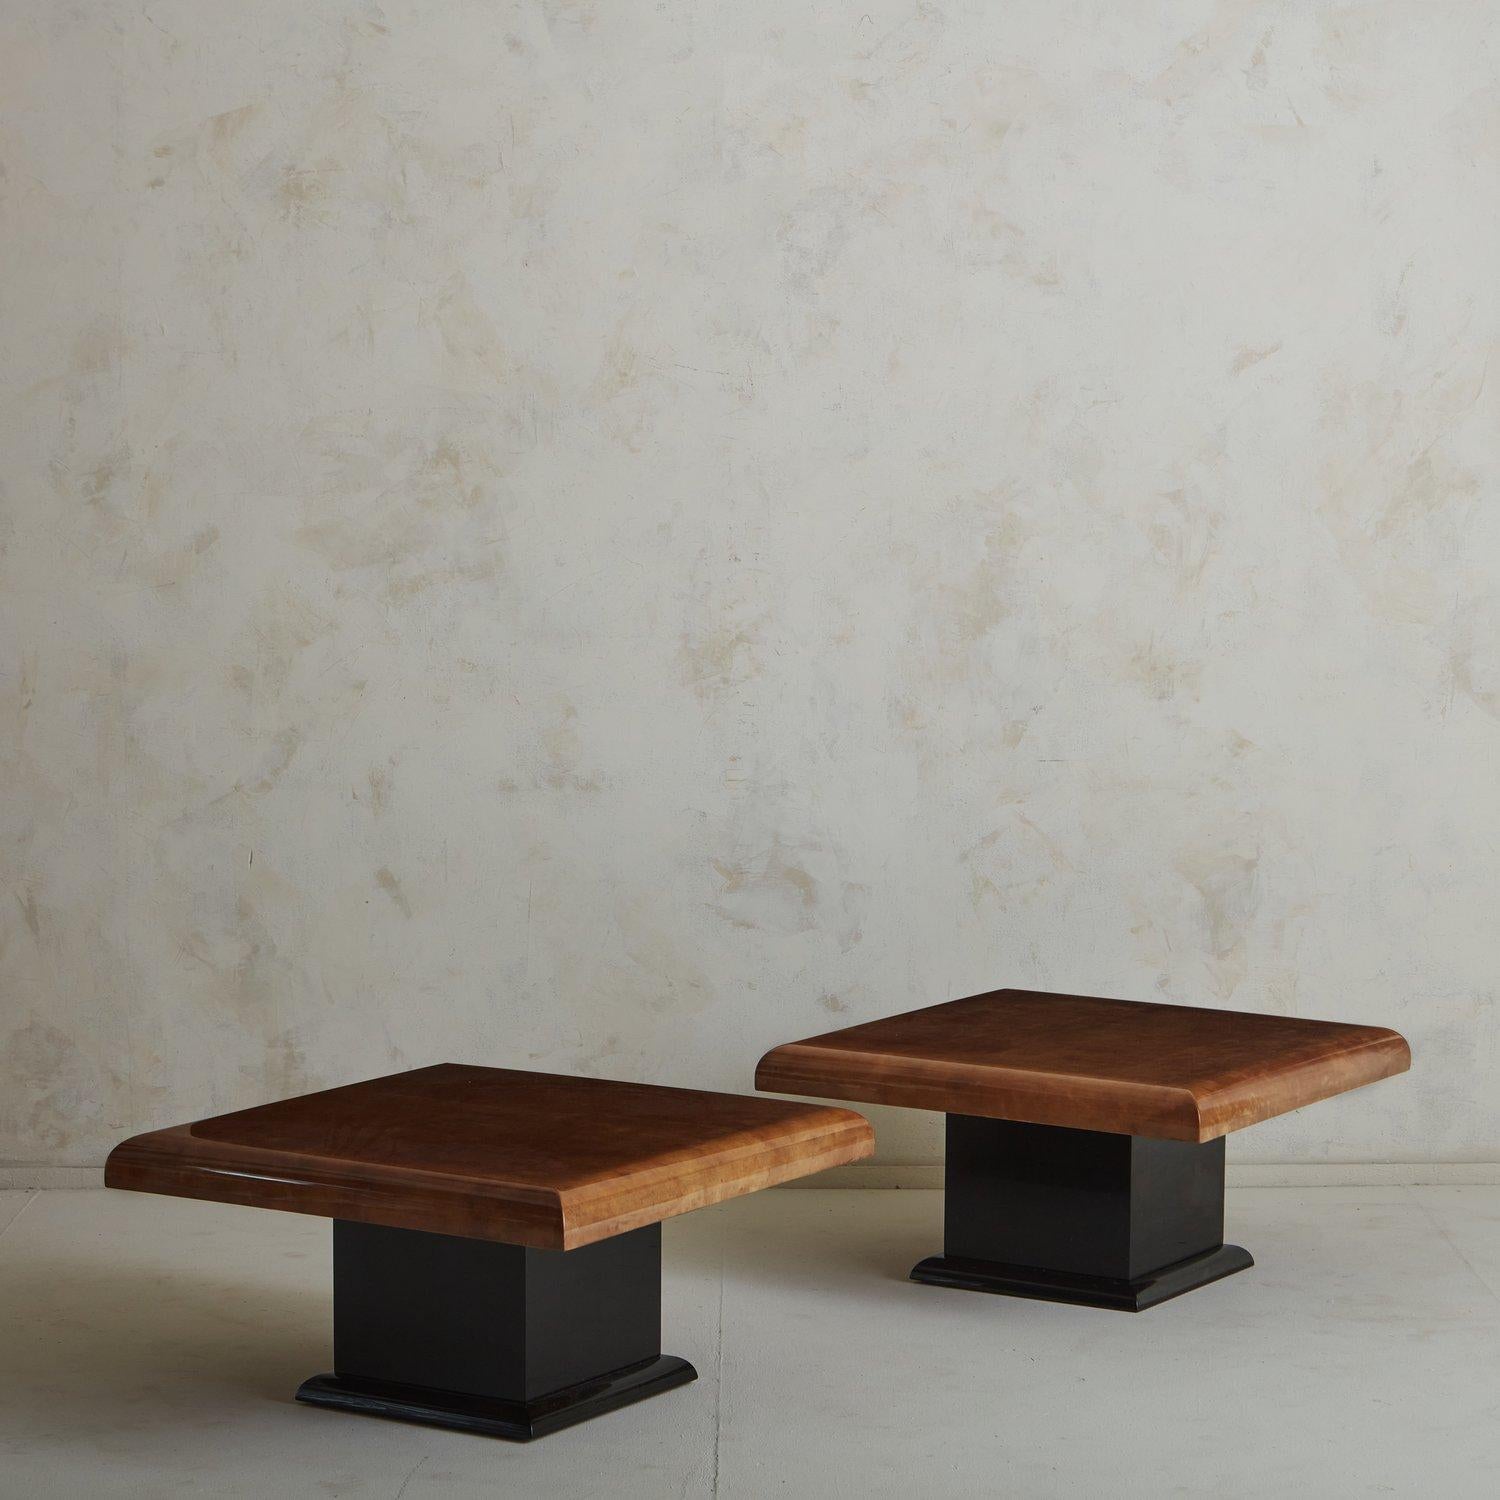 Une superbe table basse dans le style d'Aldo Tura, avec une finition parchemin laquée cognac. Il présente un épais plateau carré aux bords arrondis et repose sur un piédestal carré laqué noir avec une garniture en bandeau. Nous adorons les motifs